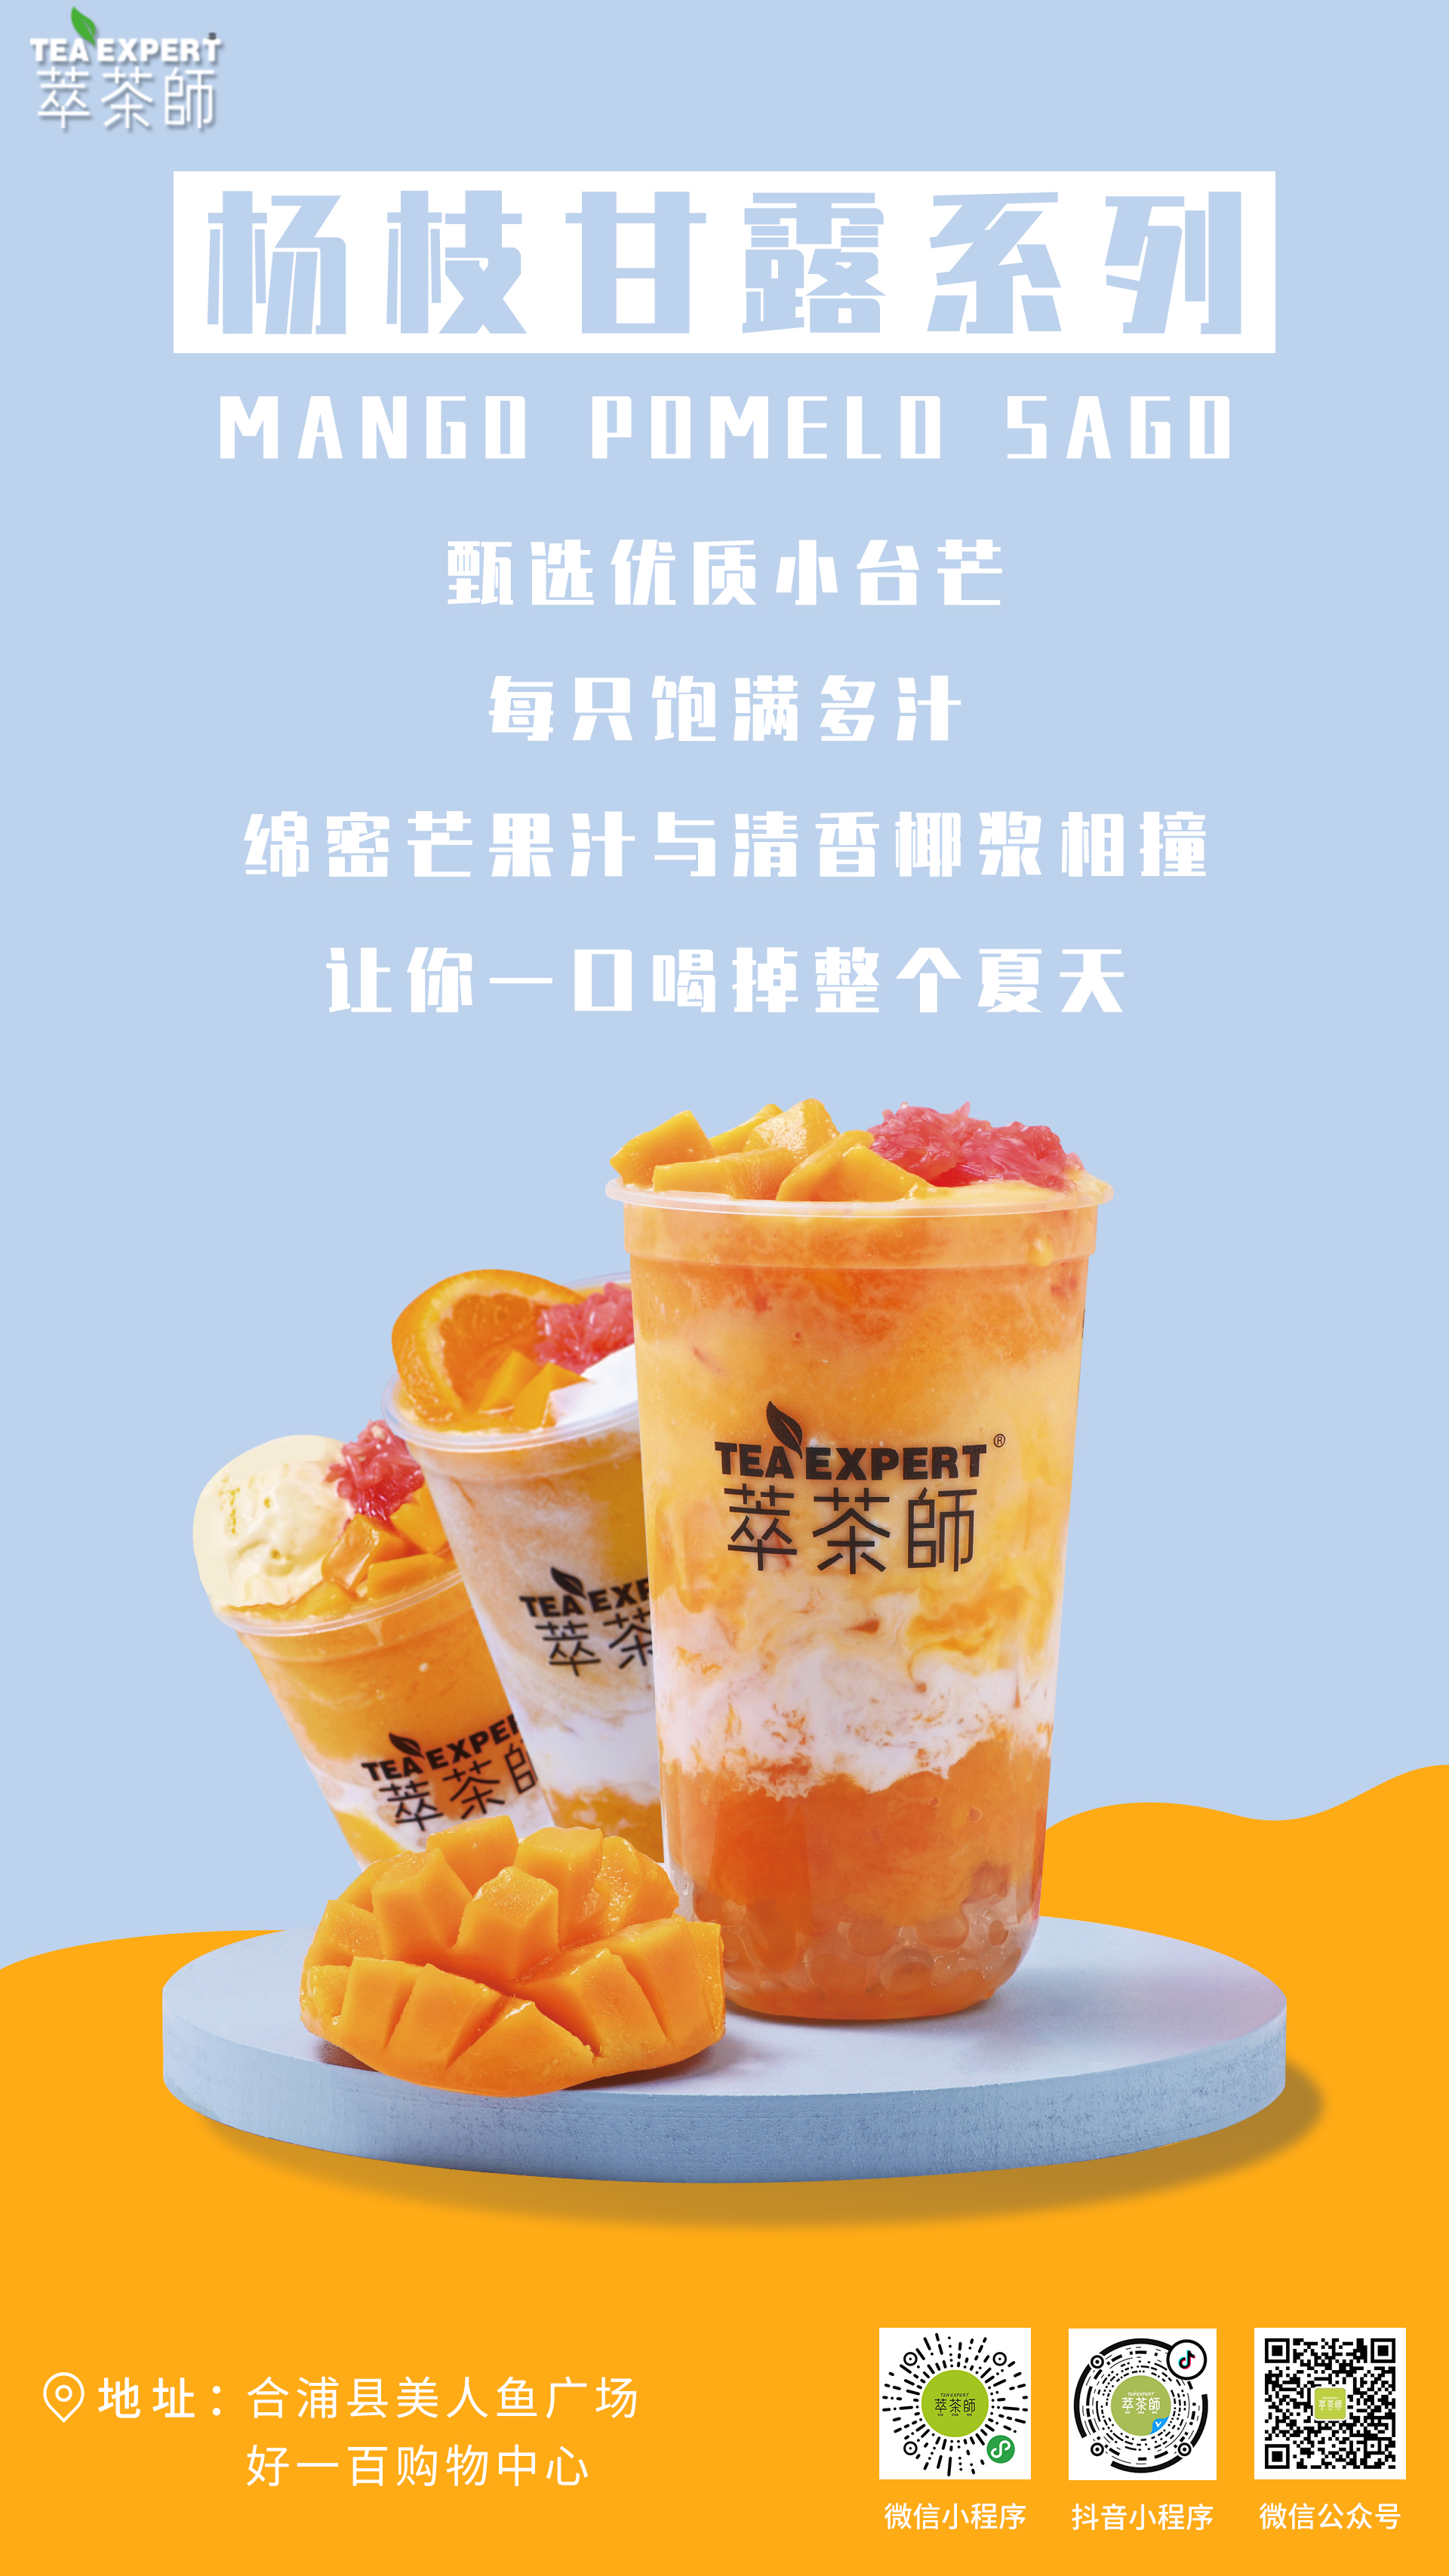 奶茶店杨枝甘露广告语图片